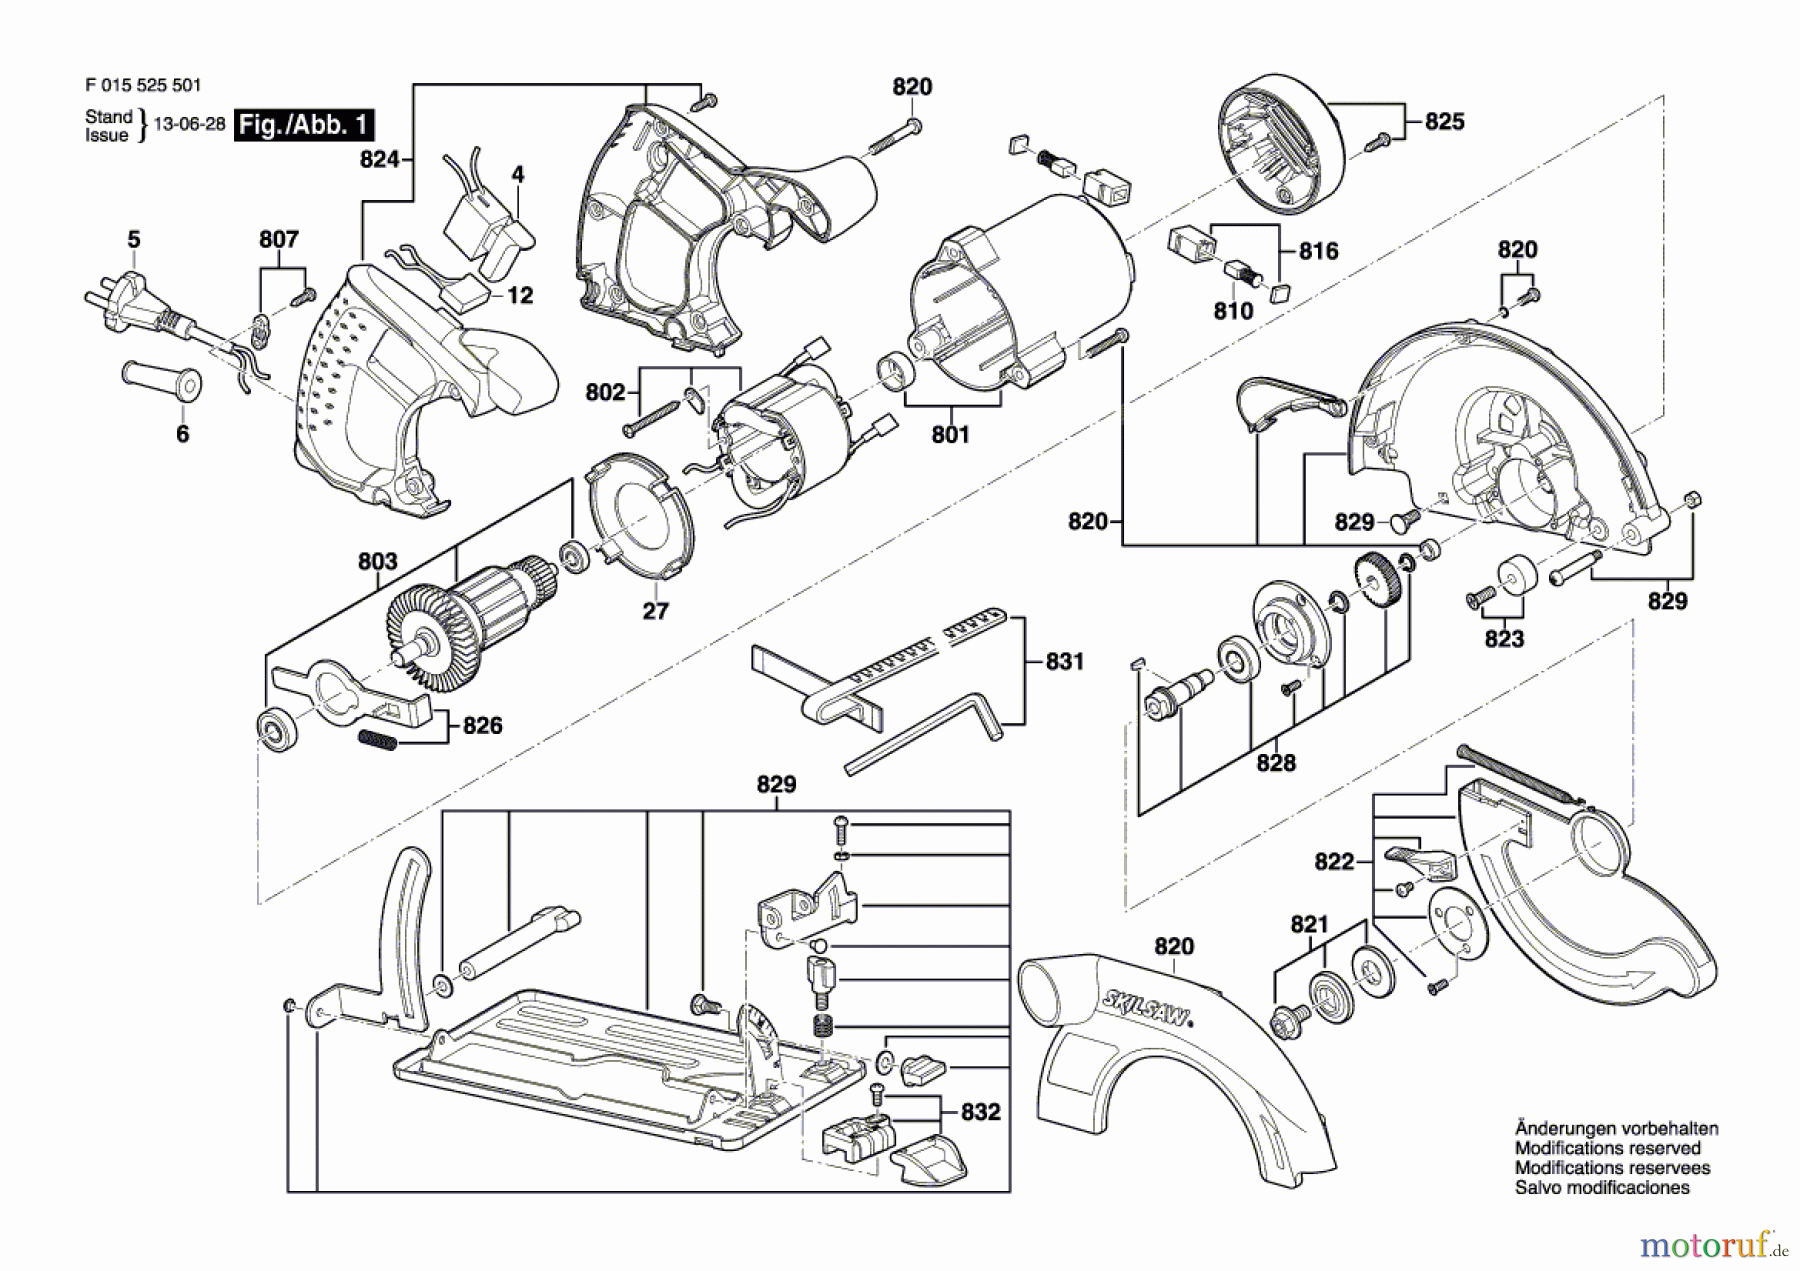  Bosch Werkzeug Handkreissäge 5255 Seite 1